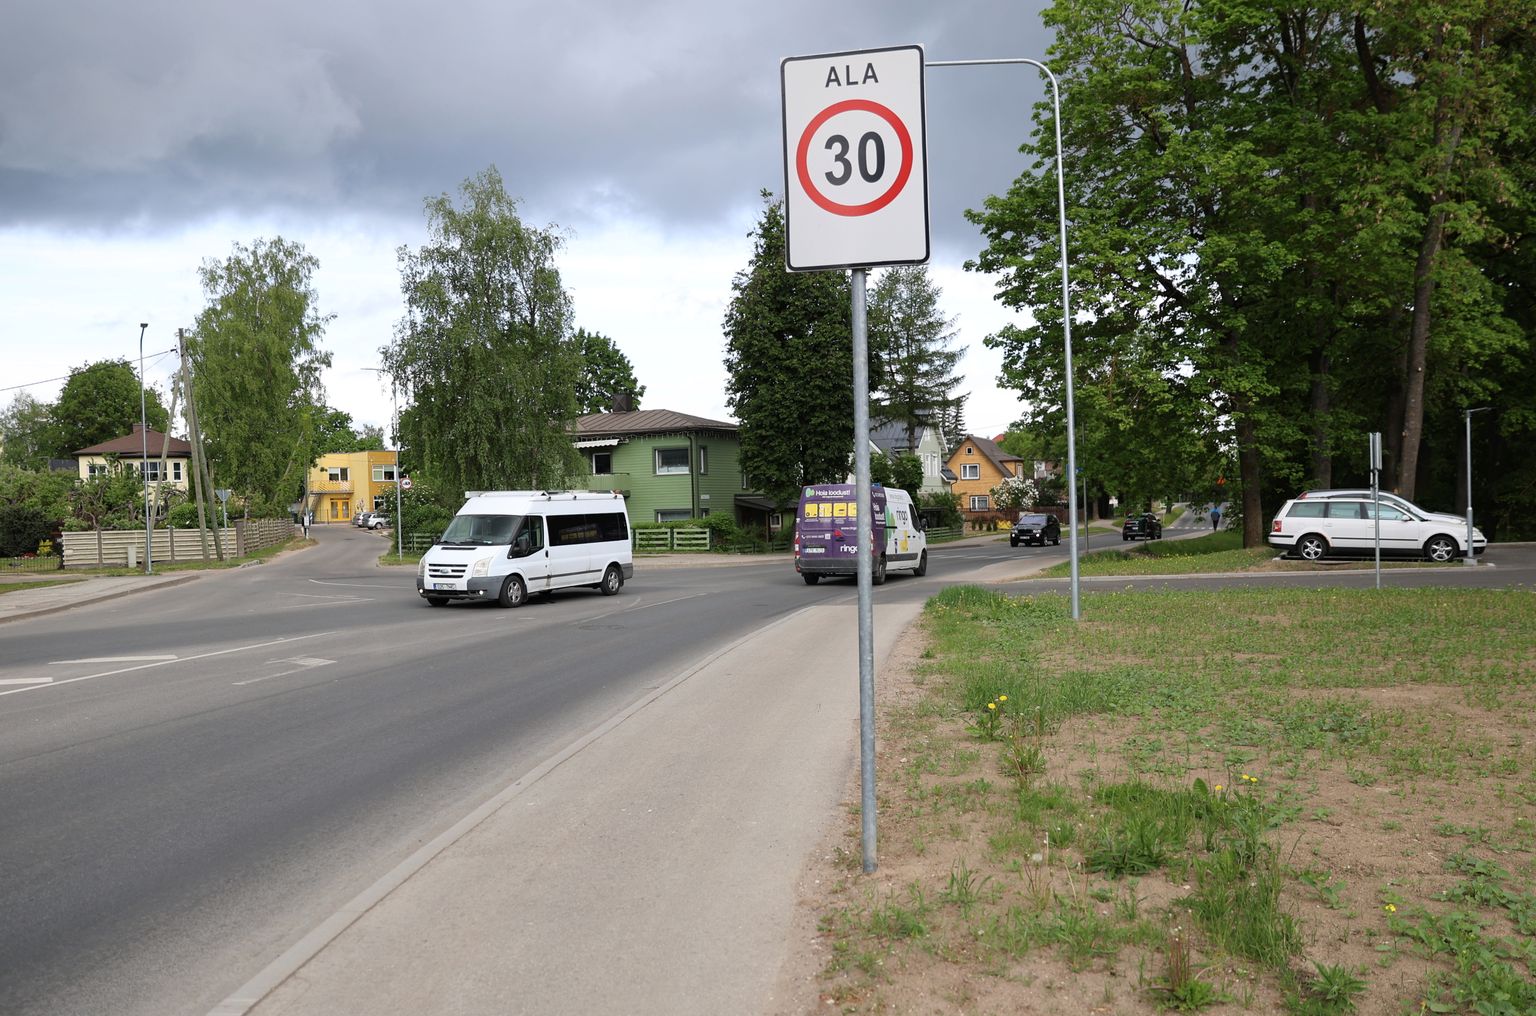 Liiklusmärk, mis märgib piiranguala algust, asub juba Tähe-Aardla-Ropka ringi mahasõidul Tähe tänava suunas.